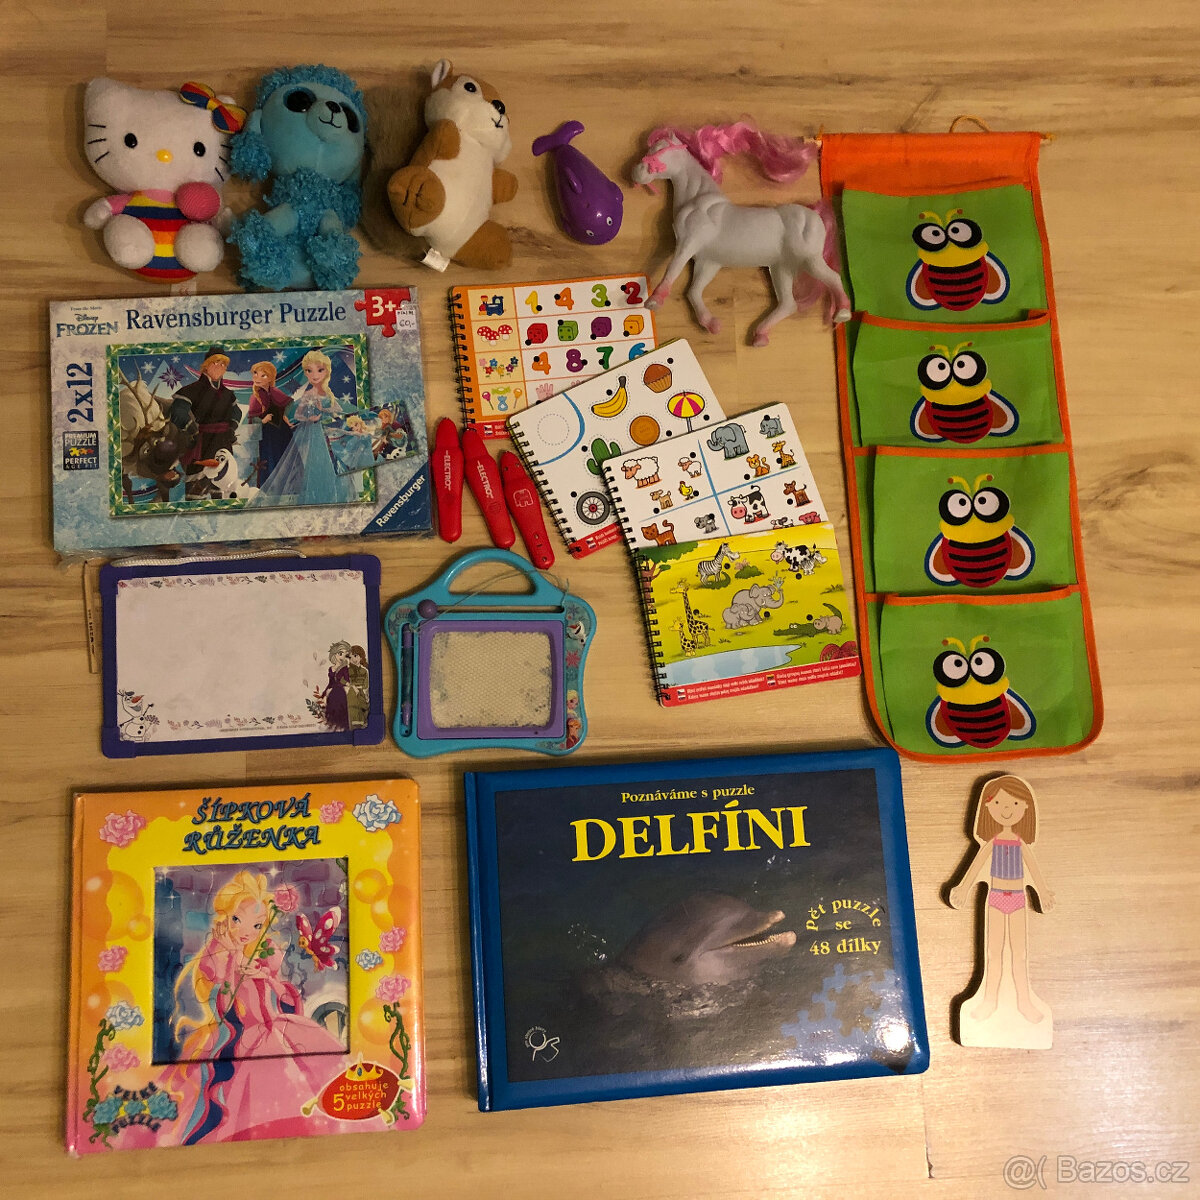 Hračky a knihy pro školkové děti